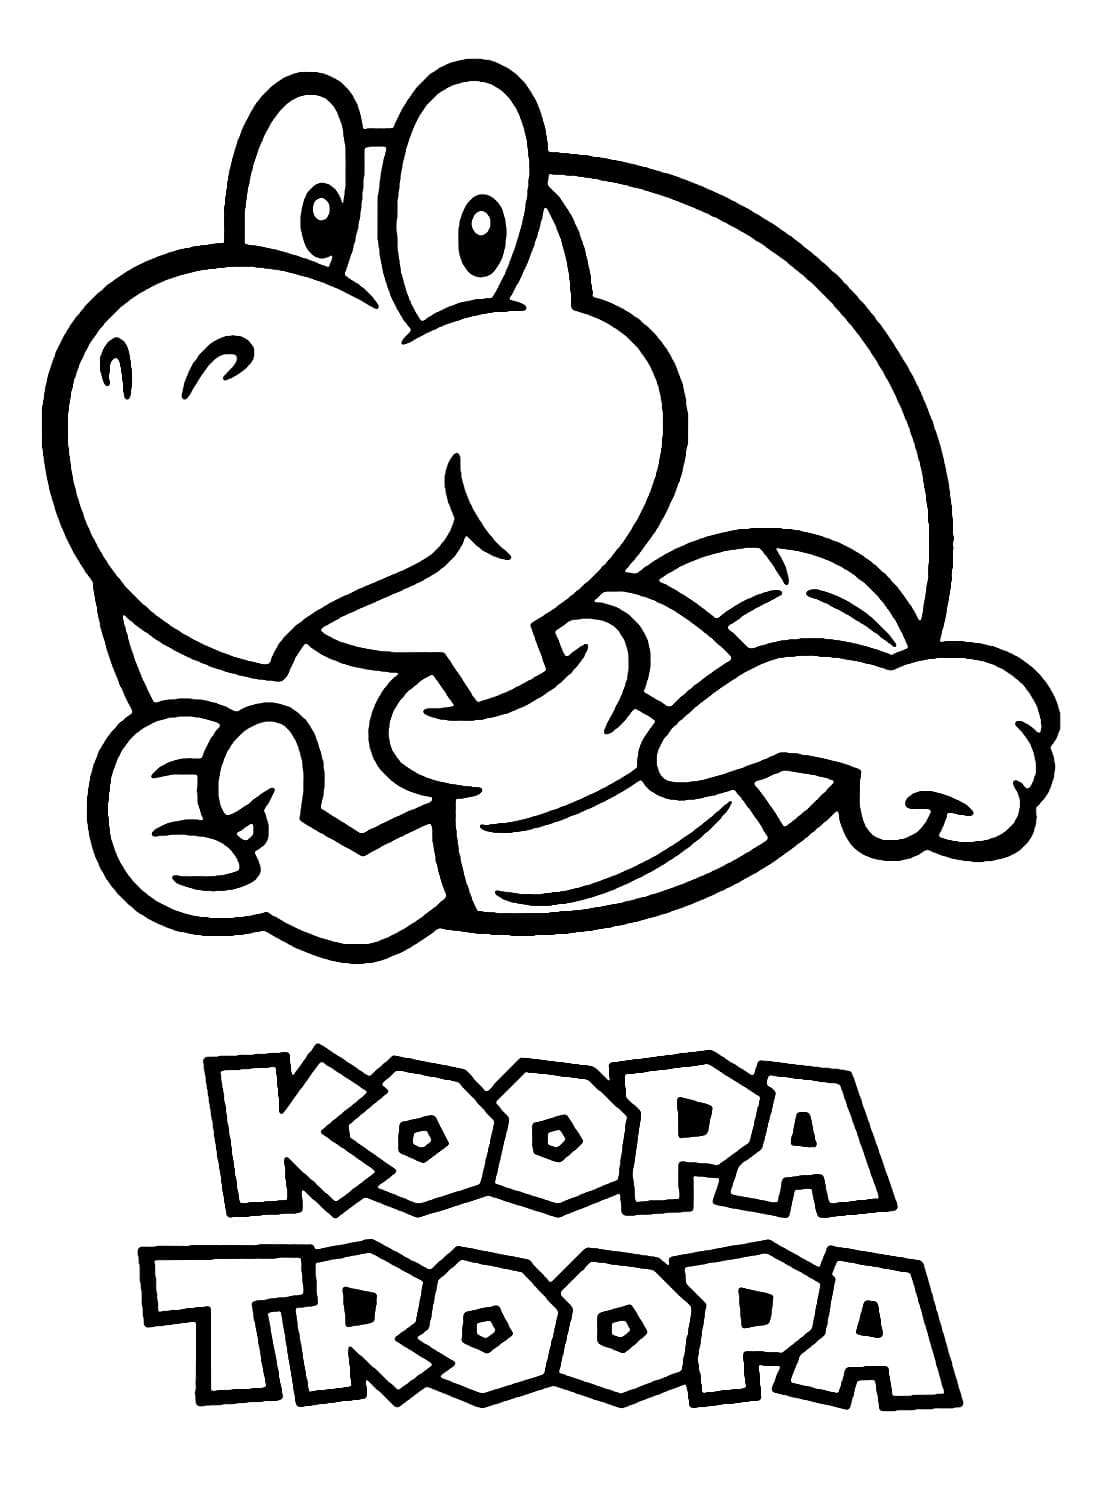 Mario Bros Koopa Troopa coloring page